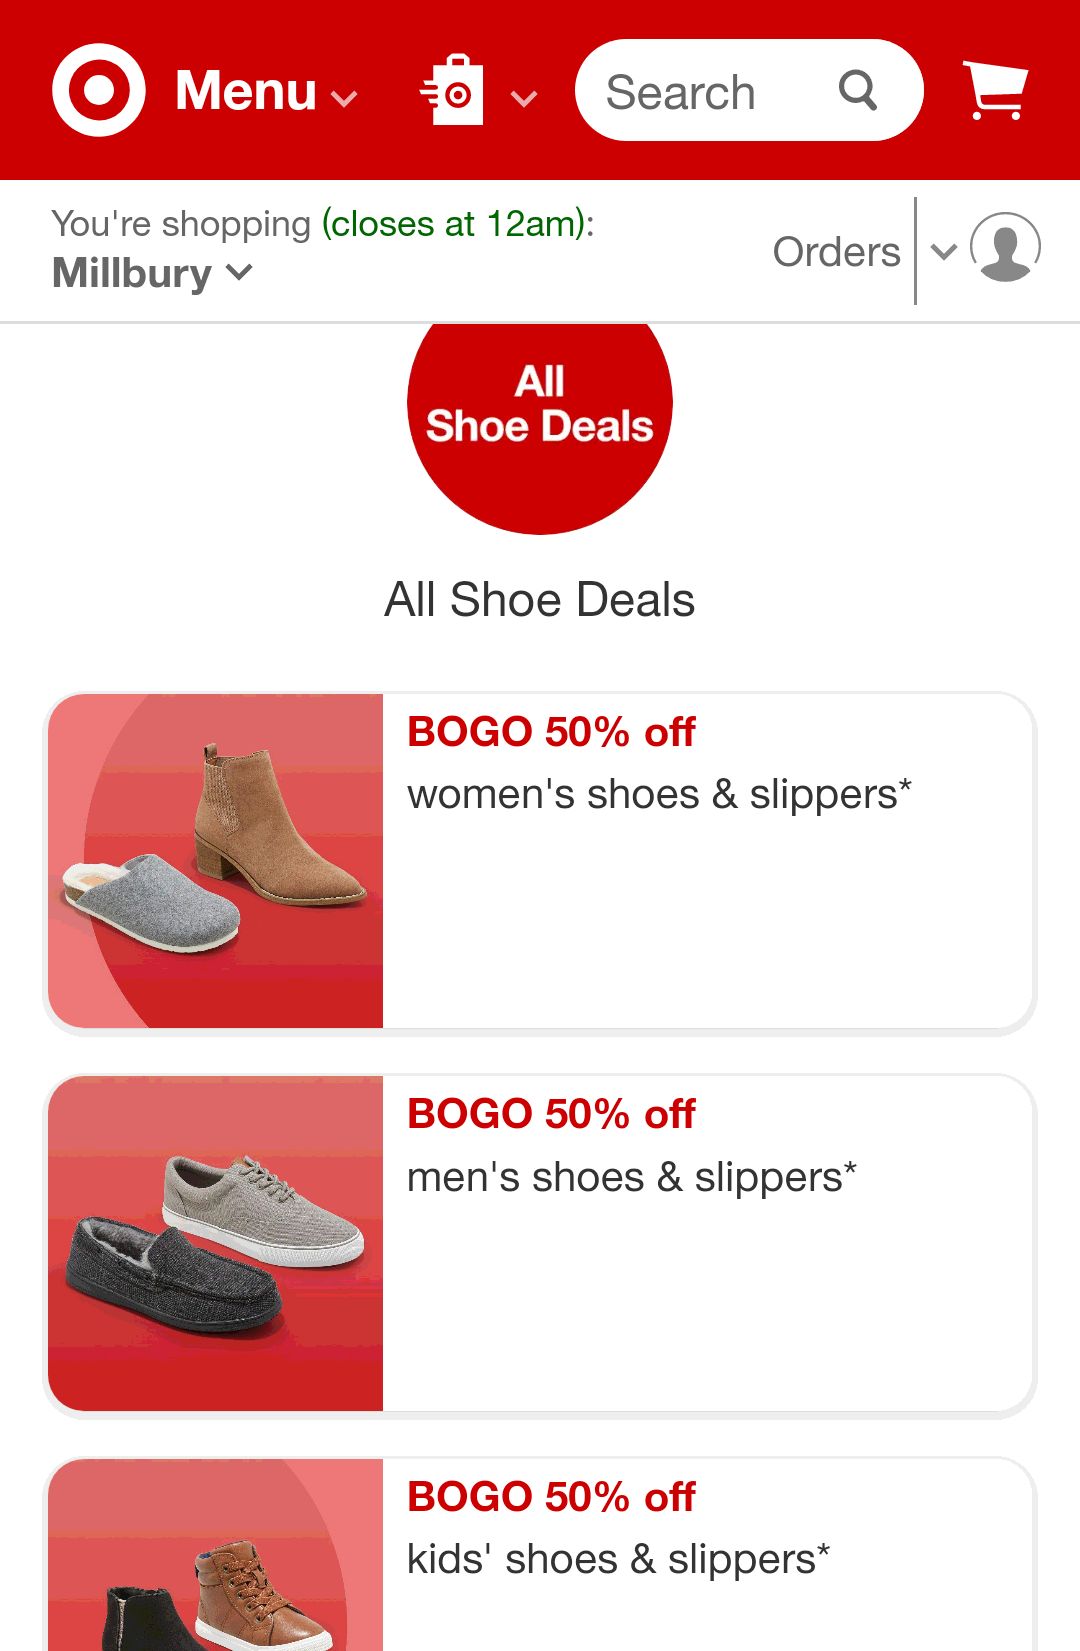 Shoe Deals : Target BOGO 50%

男、女、童鞋特卖，买一双，第二双半价。